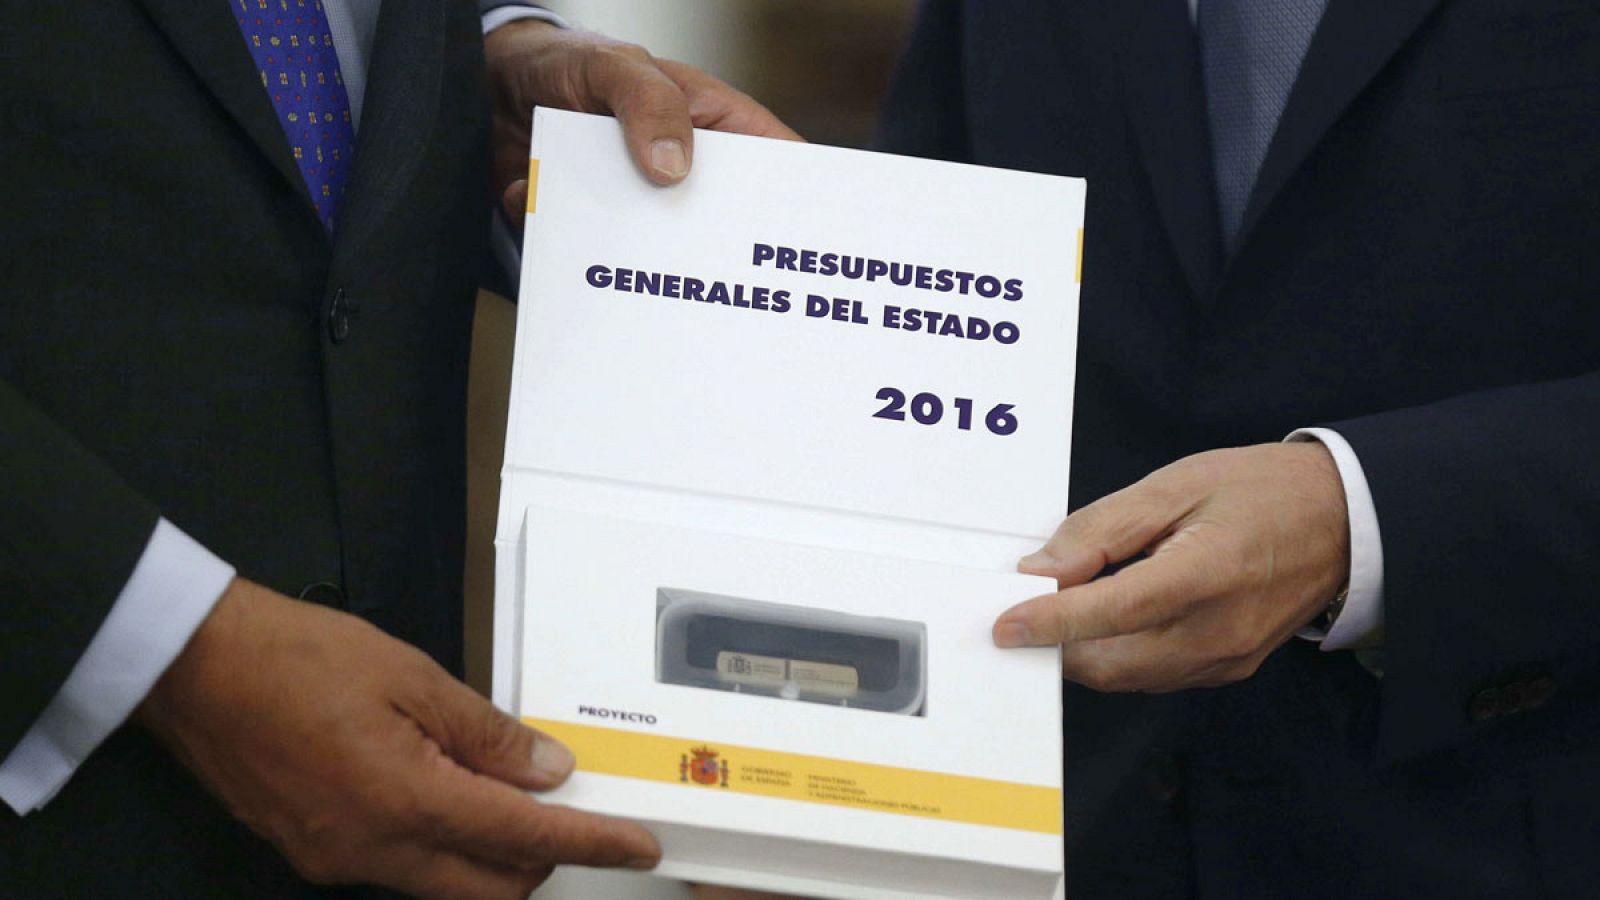 Primer plano del estuche que contiene el USB del proyecto de ley de Presupuestos Generales del Estado 2016